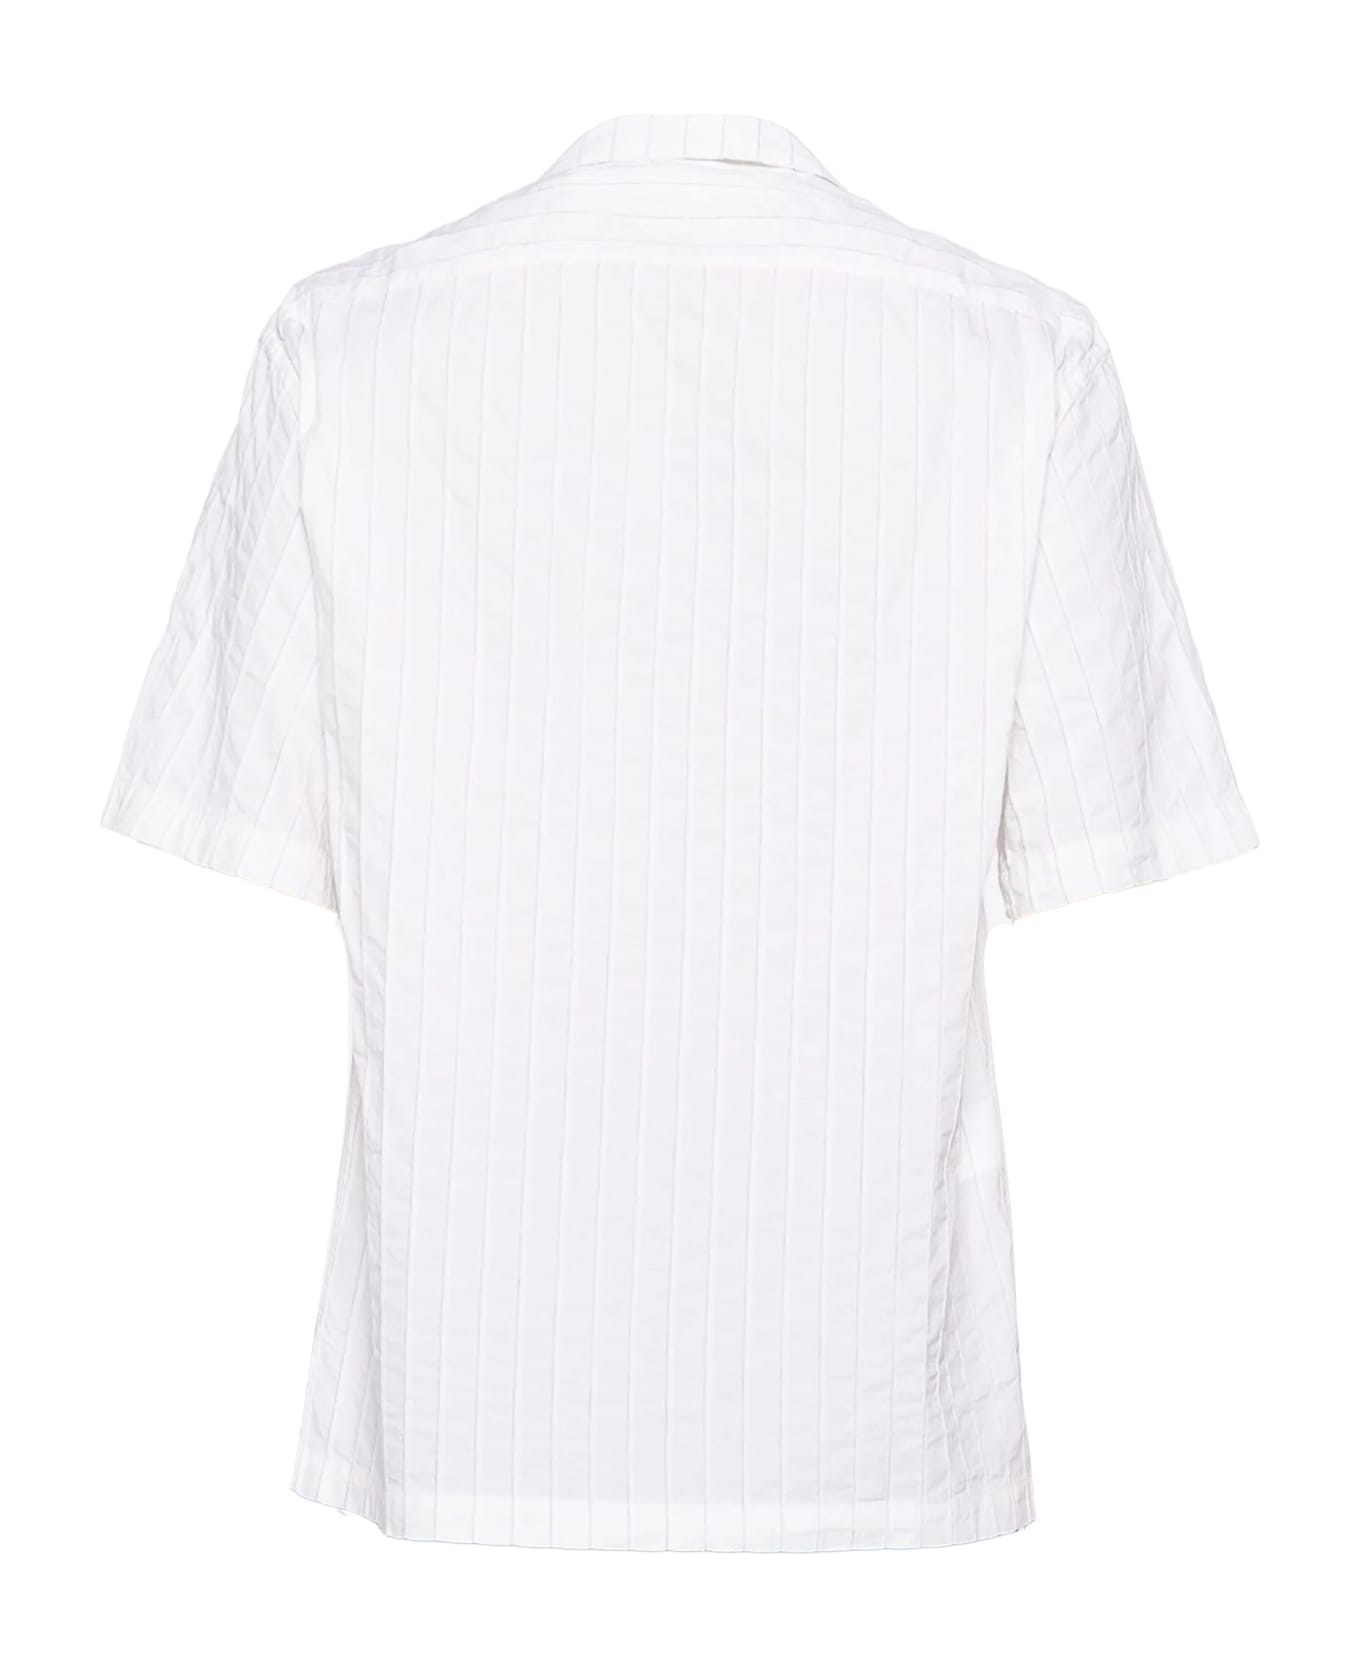 Barena Shirts White - White